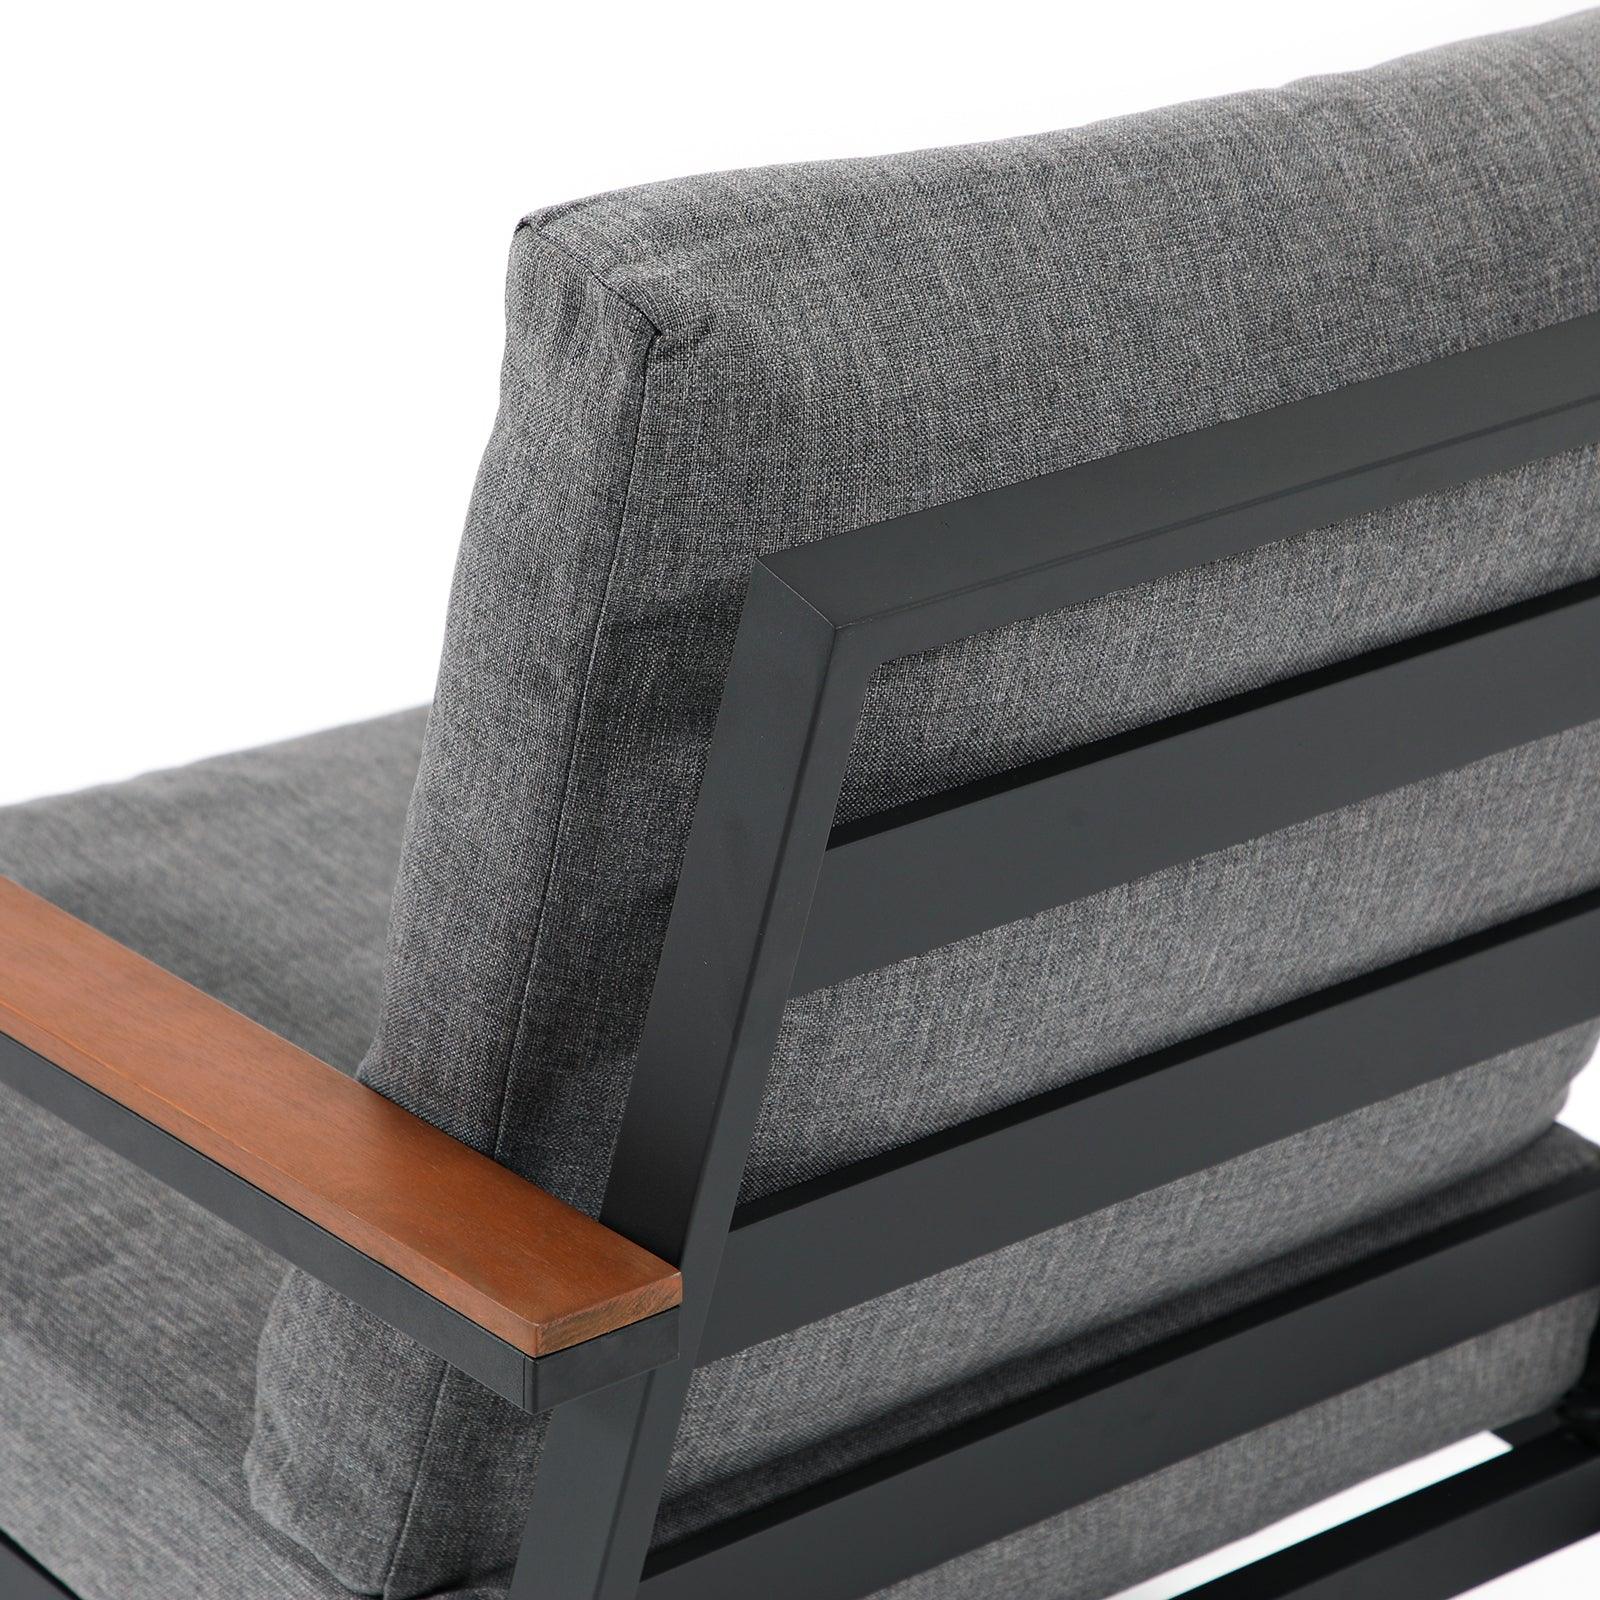 Ronda Grey aluminum outdoor sofa, grey cushions, durable aluminum frame, Chair close-up view, back view- Jardina Furniture